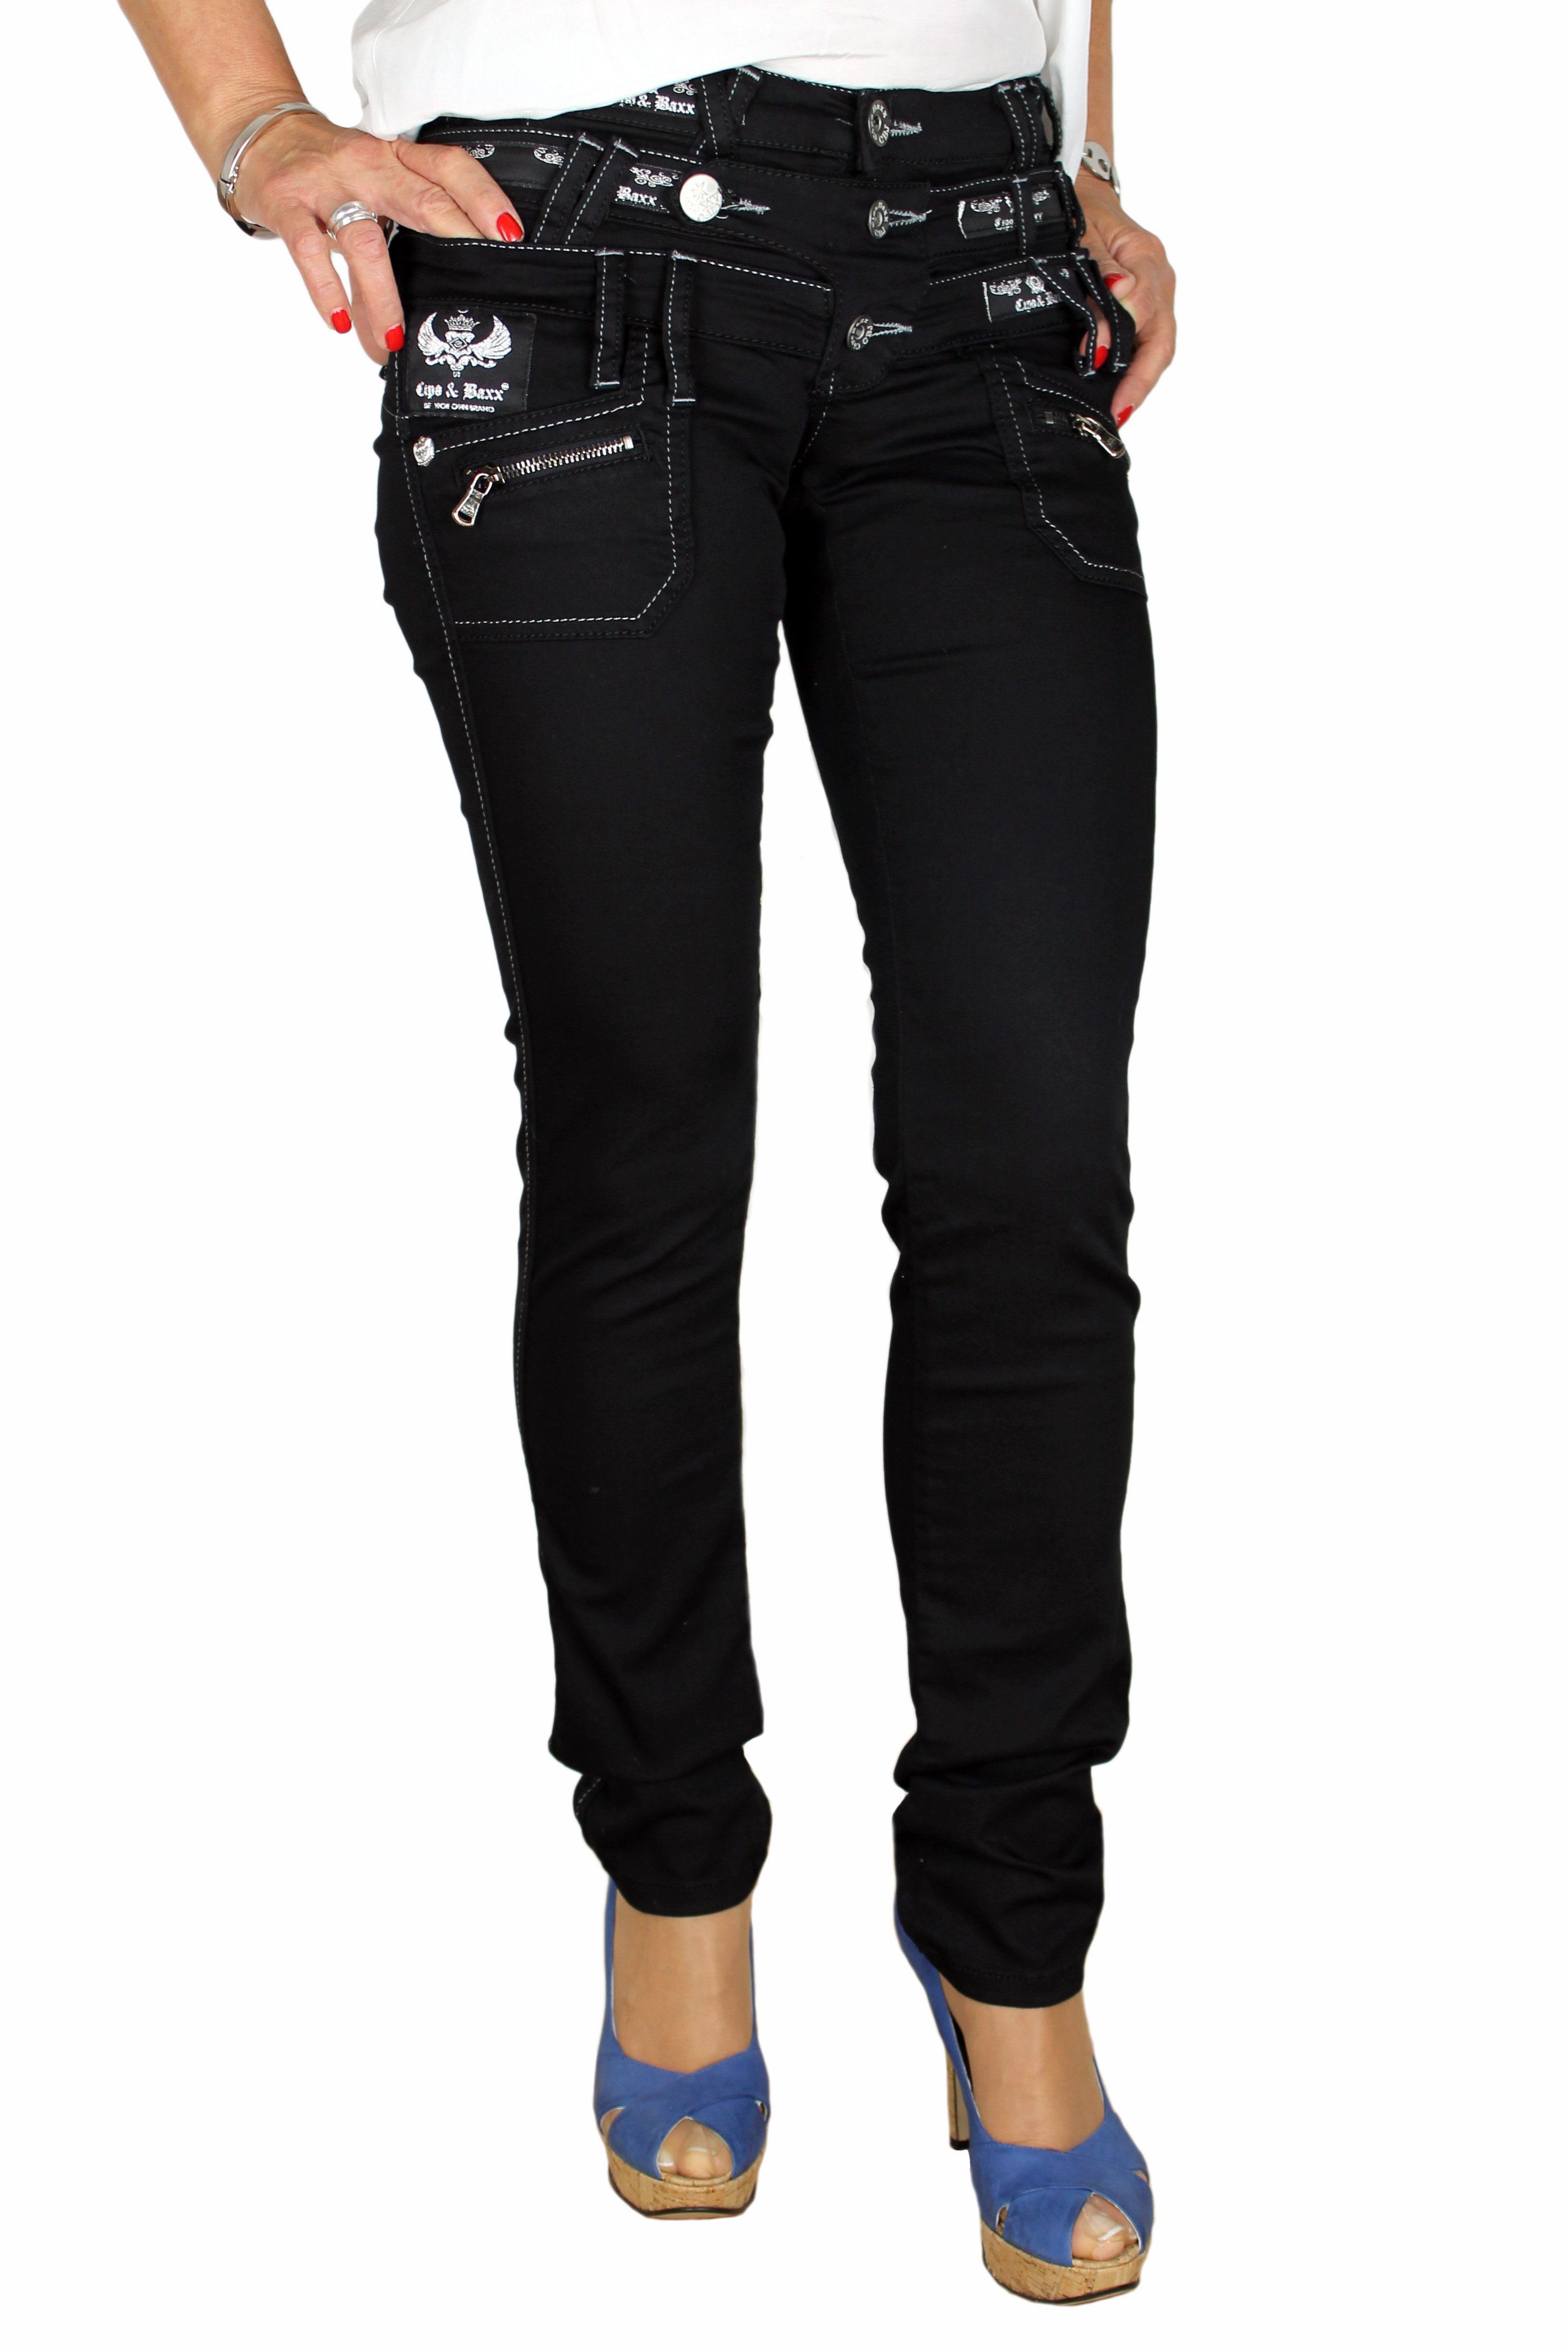 Cipo & Baxx angenehmer mit Design außergewönlichem dreifacher Jeans Gürtelschlaufenanreihung, im Jeans Tragekomfort Hose Straight-Jeans